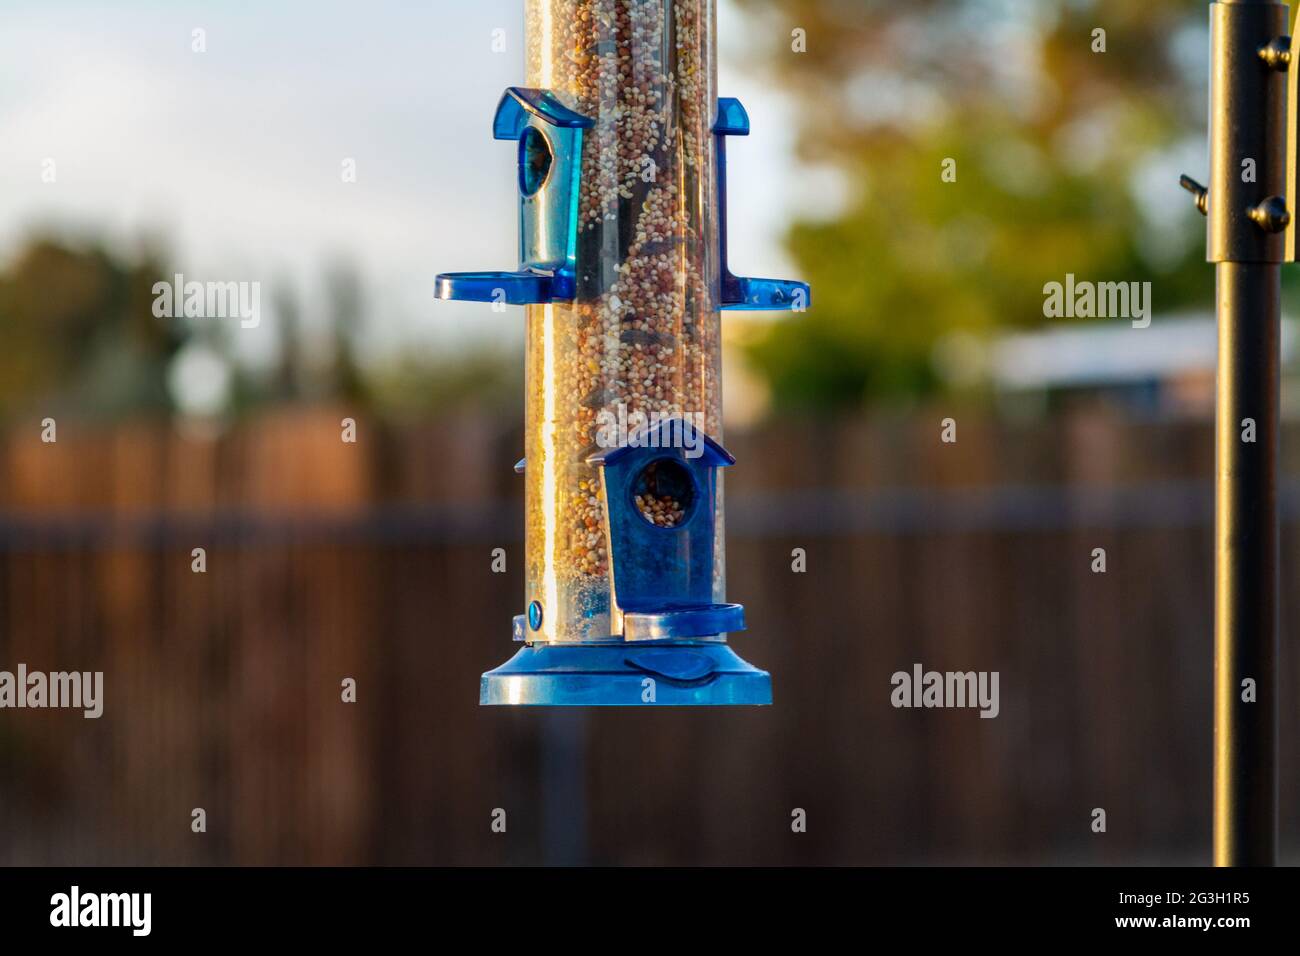 A blue bird feeder in a residential backyard Stock Photo